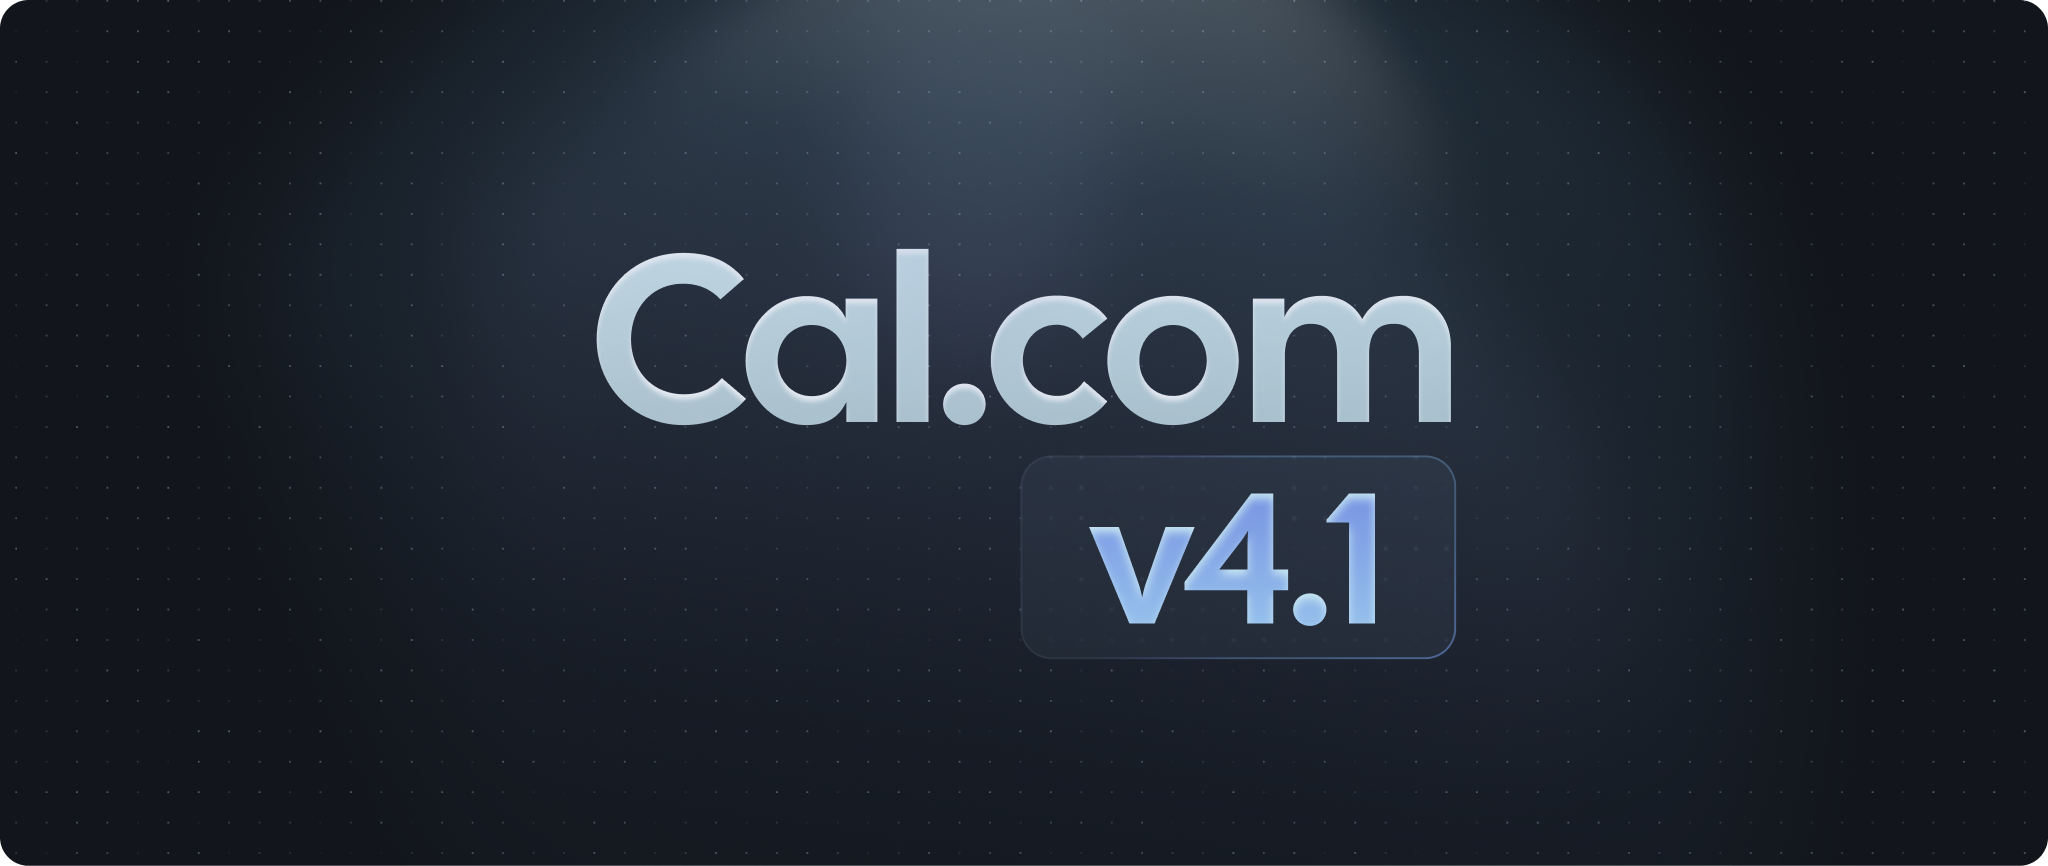 Cal.com v4.1